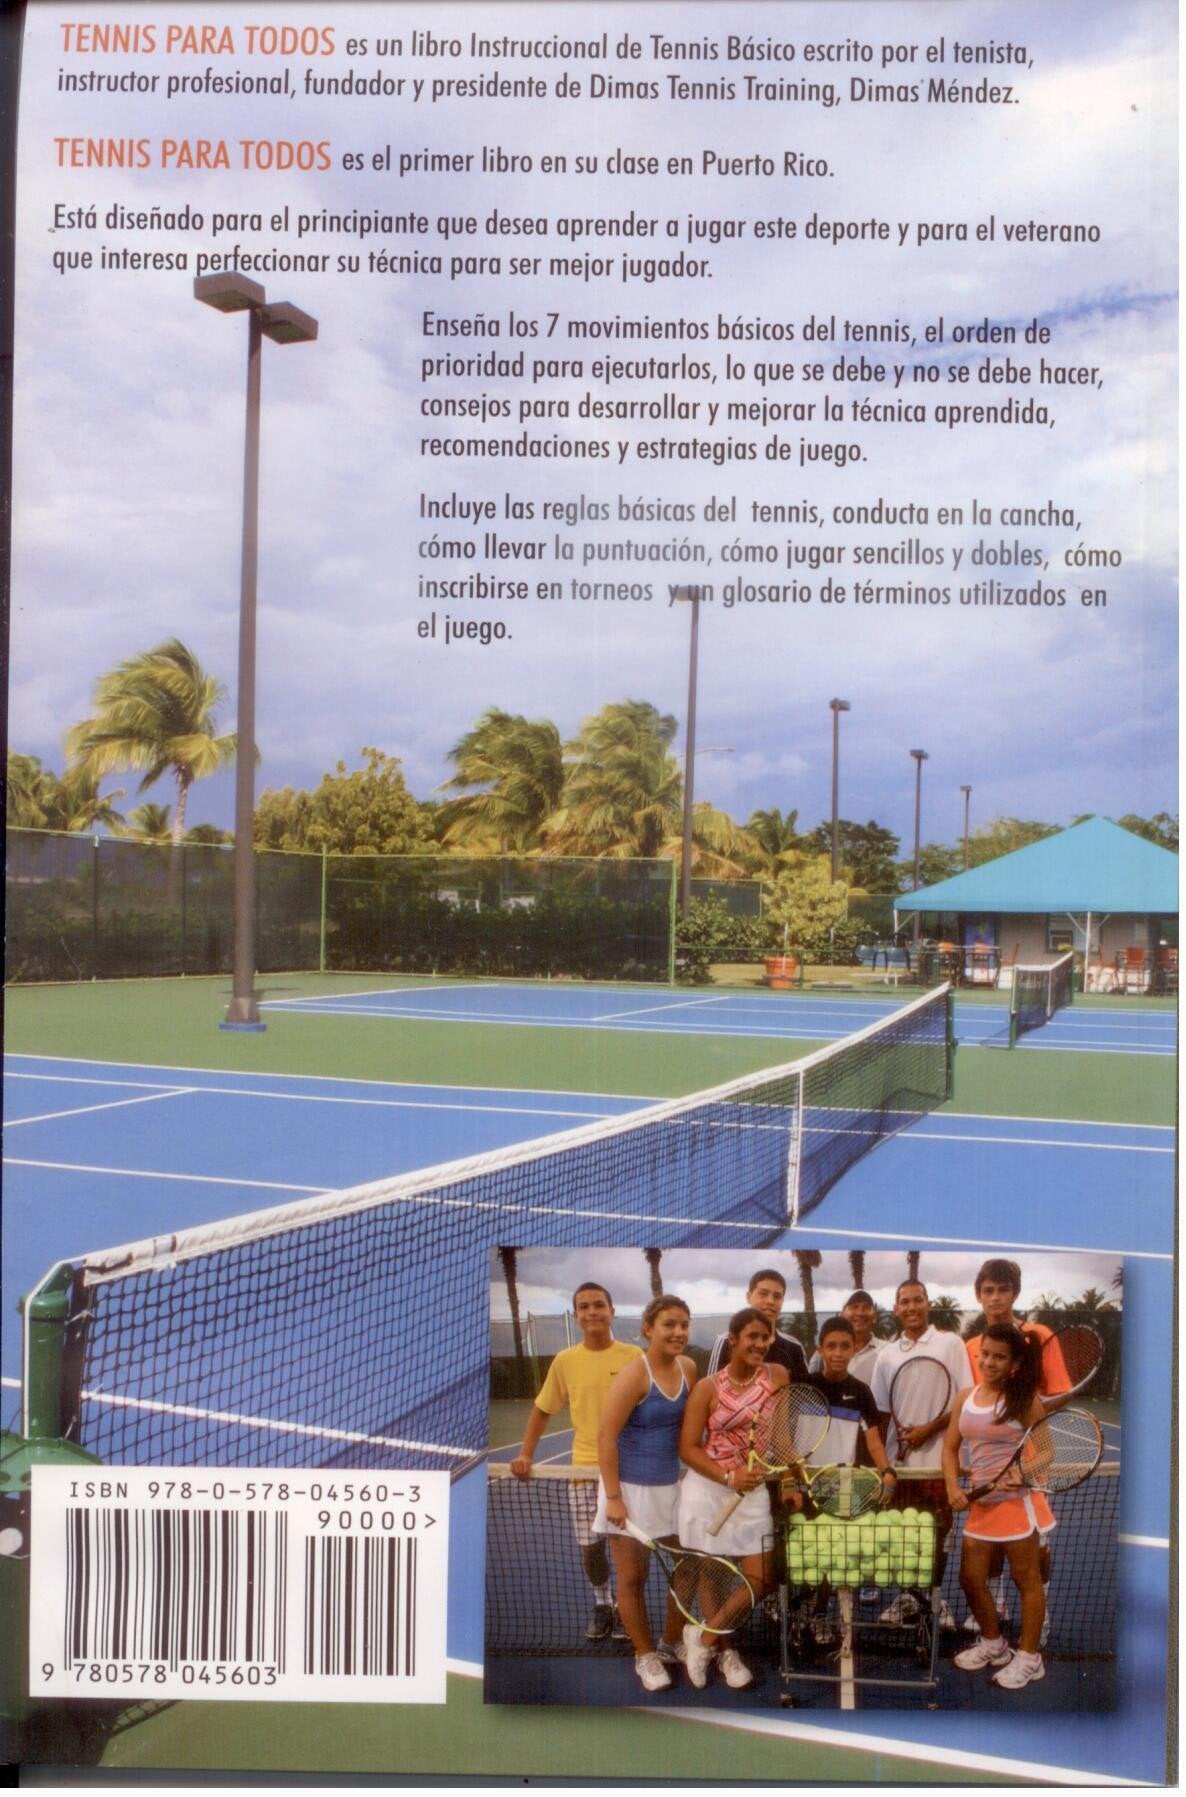 Tennis para todos - Dimas Tennis Training - D'Autores